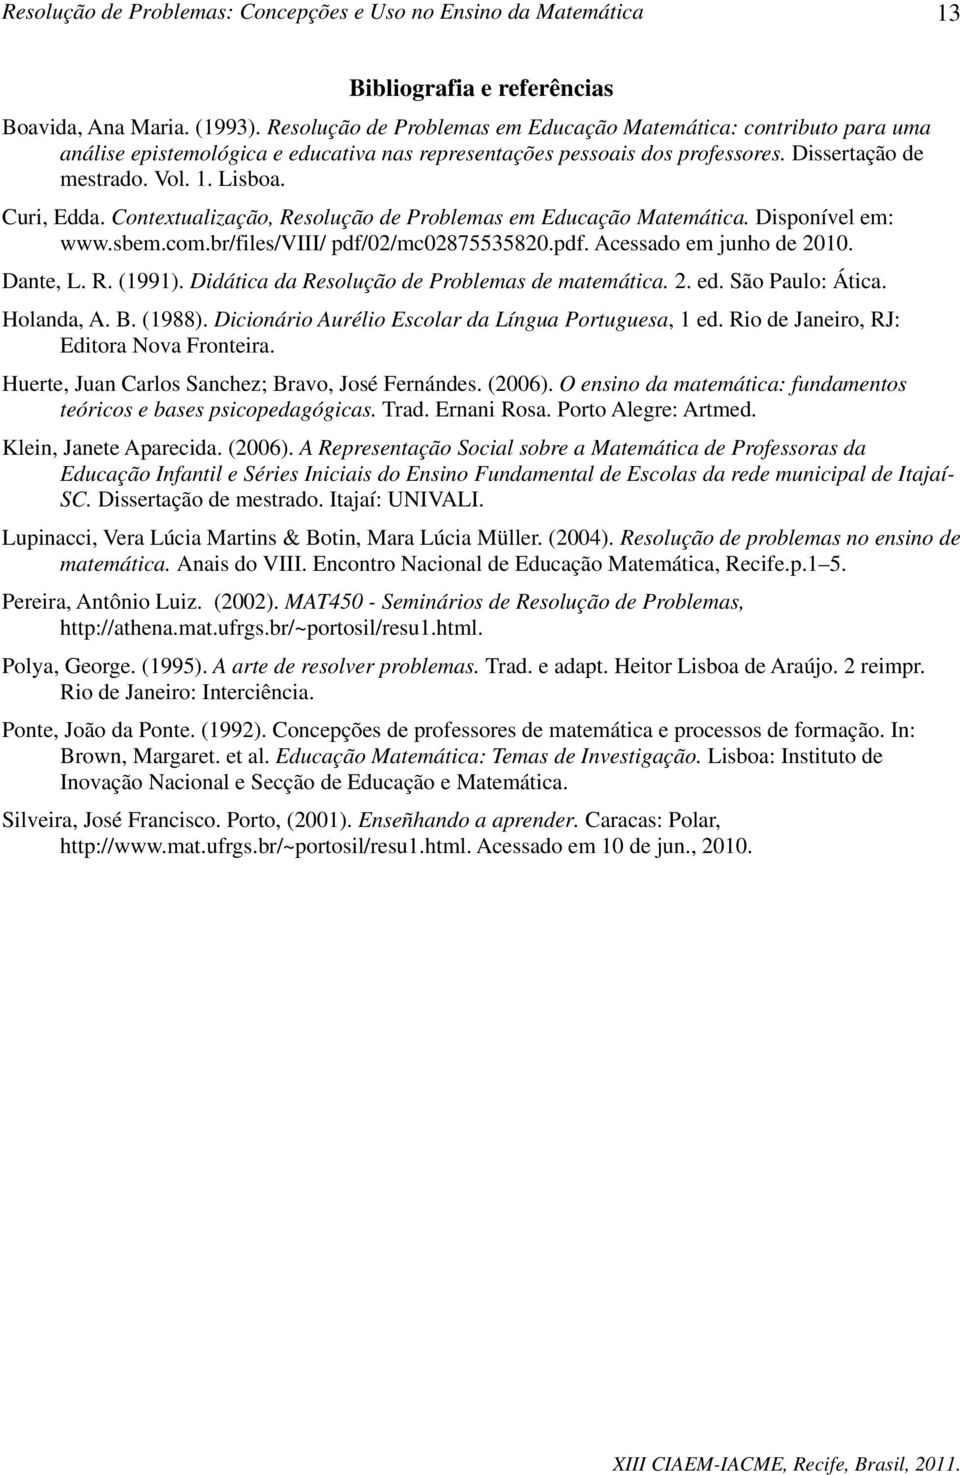 Contextualização, Resolução de Problemas em Educação Matemática. Disponível em: www.sbem.com.br/files/viii/ pdf/02/mc02875535820.pdf. Acessado em junho de 2010. Dante, L. R. (1991).